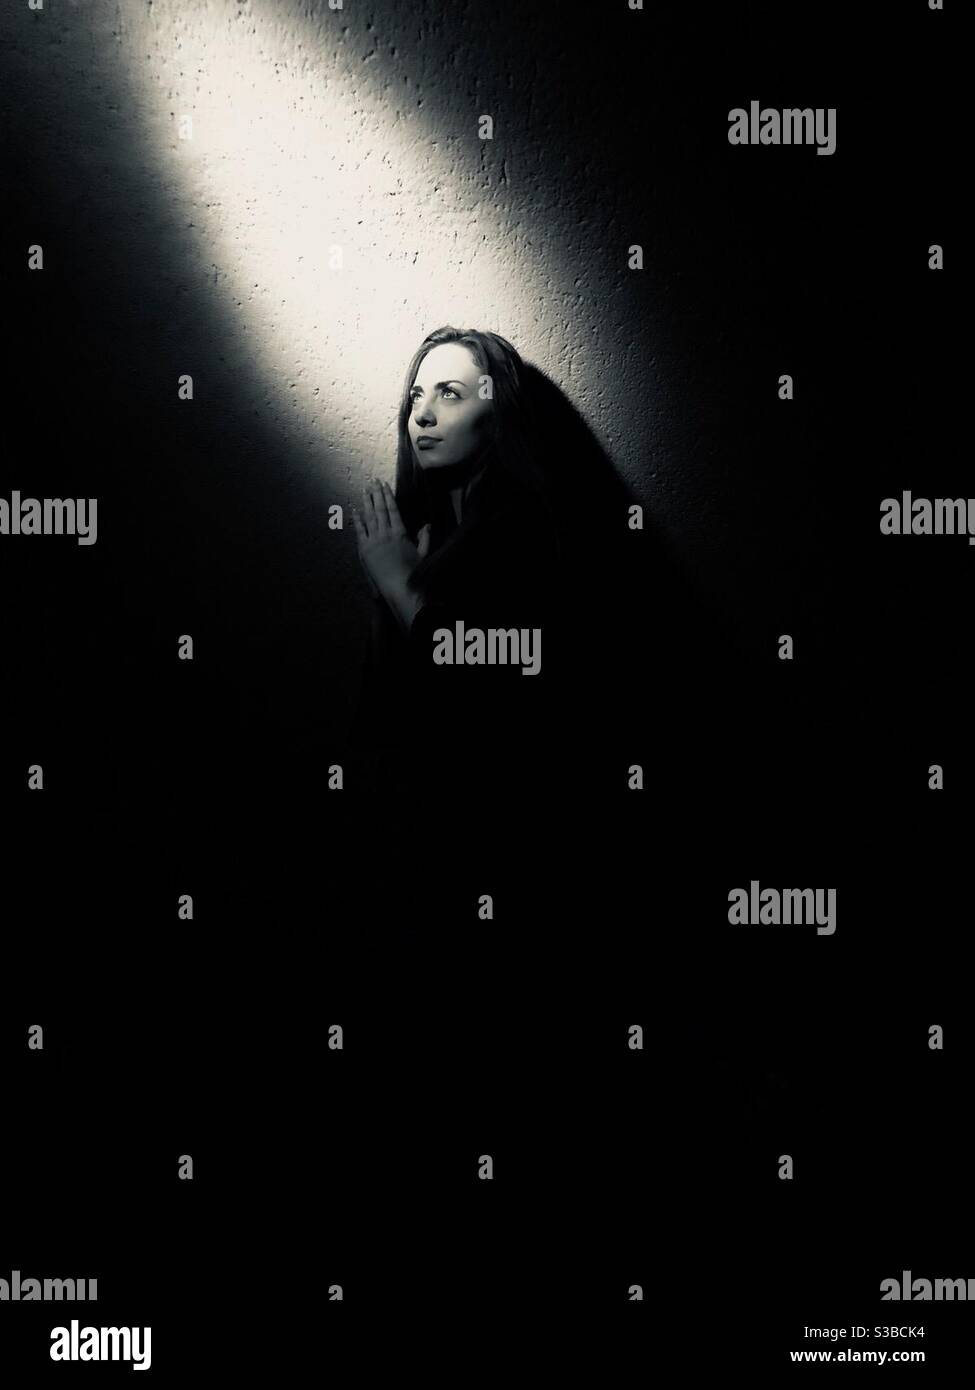 Photographie en noir et blanc d’une femme se tournant vers un rayon de lumière / espoir Foto Stock